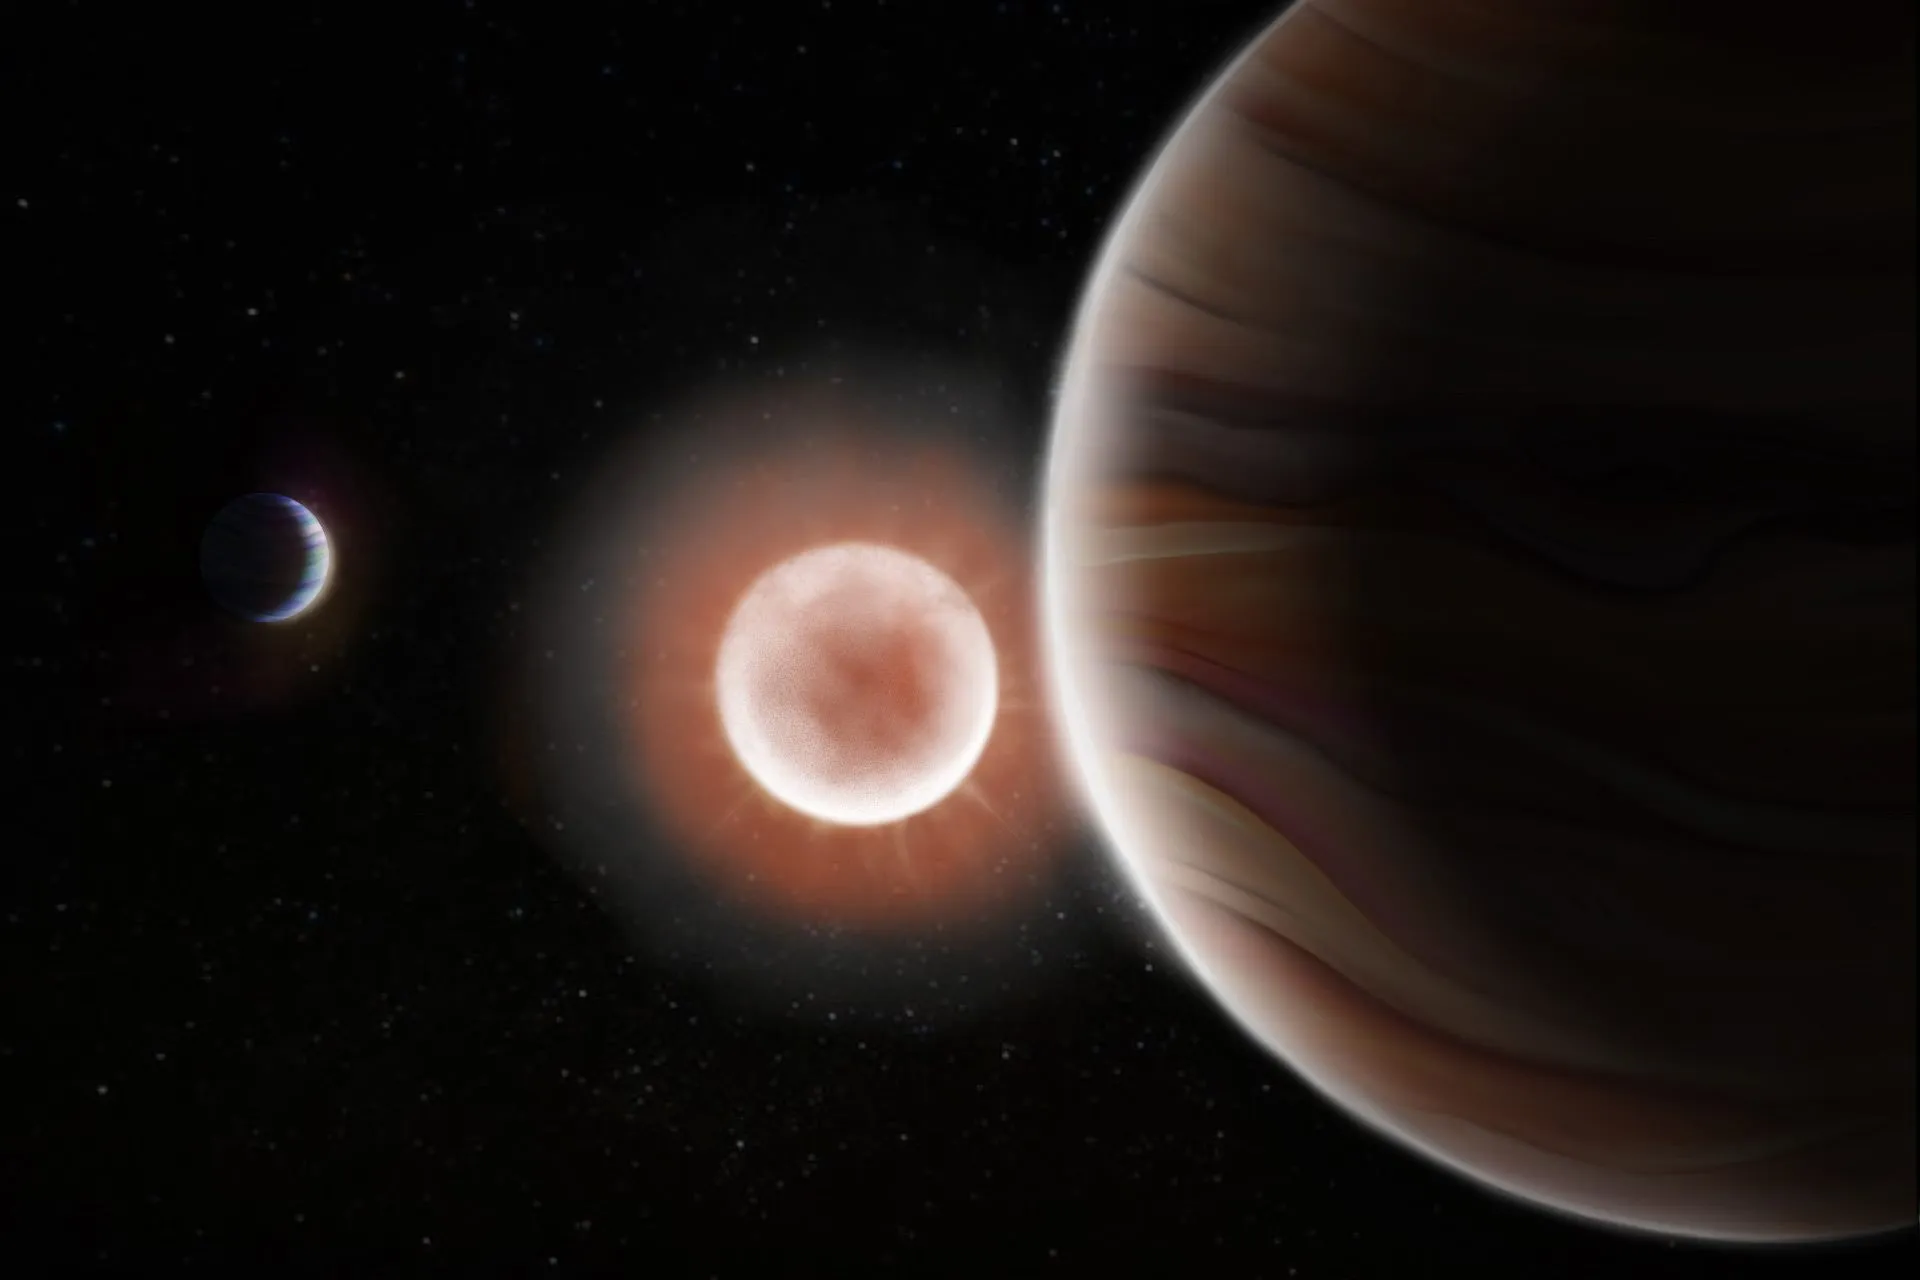 艺术家对TOI-4600系统中两颗系外行星及其母星的想像。An artist’s rendition of the two exoplanets and their parent star in the TOI-4600 system. Image credit: Tedi Vick.